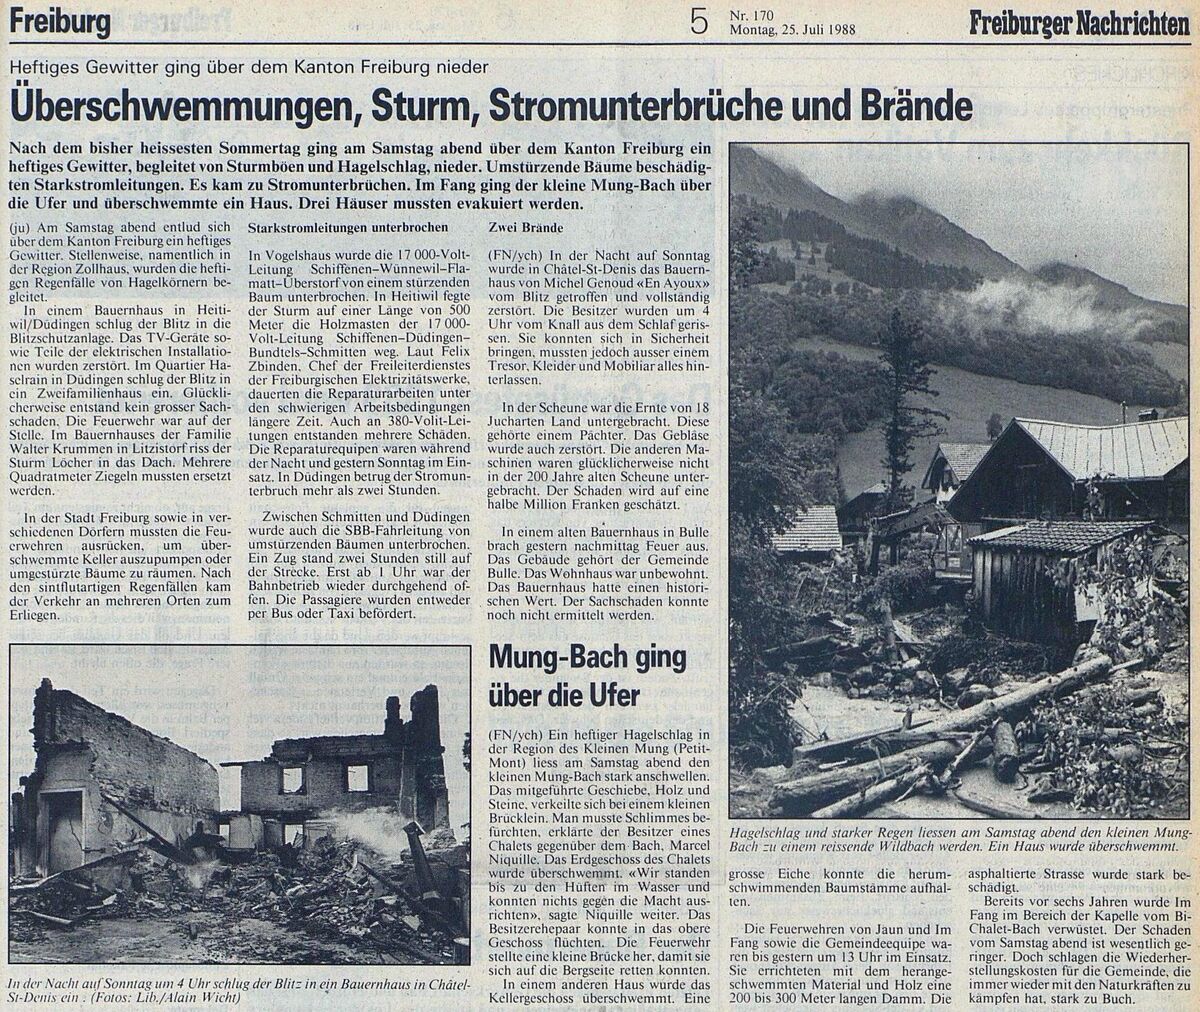 19880723 02 Flood Jaun FR Freiburger Nachrichten 2 25.07.1988.jpg